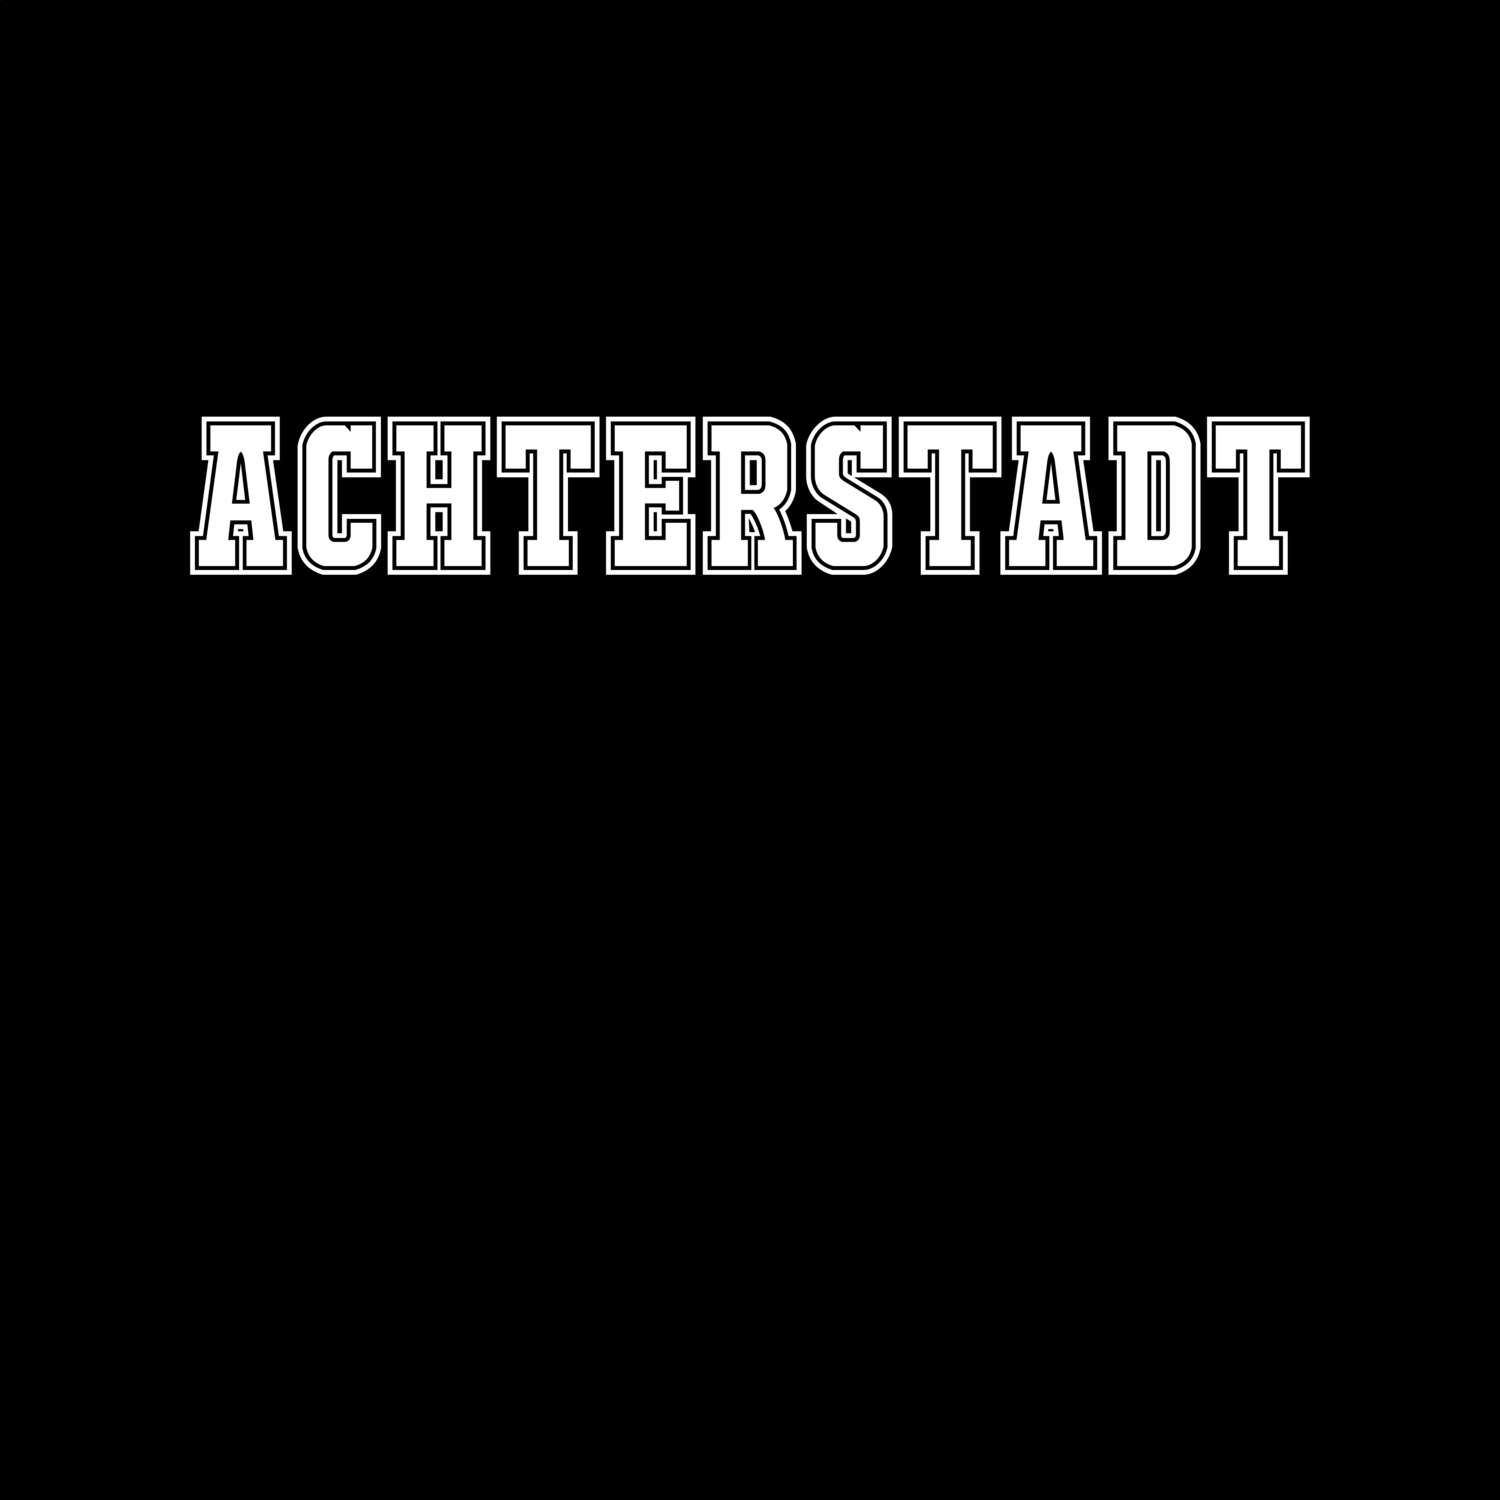 Achterstadt T-Shirt »Classic«